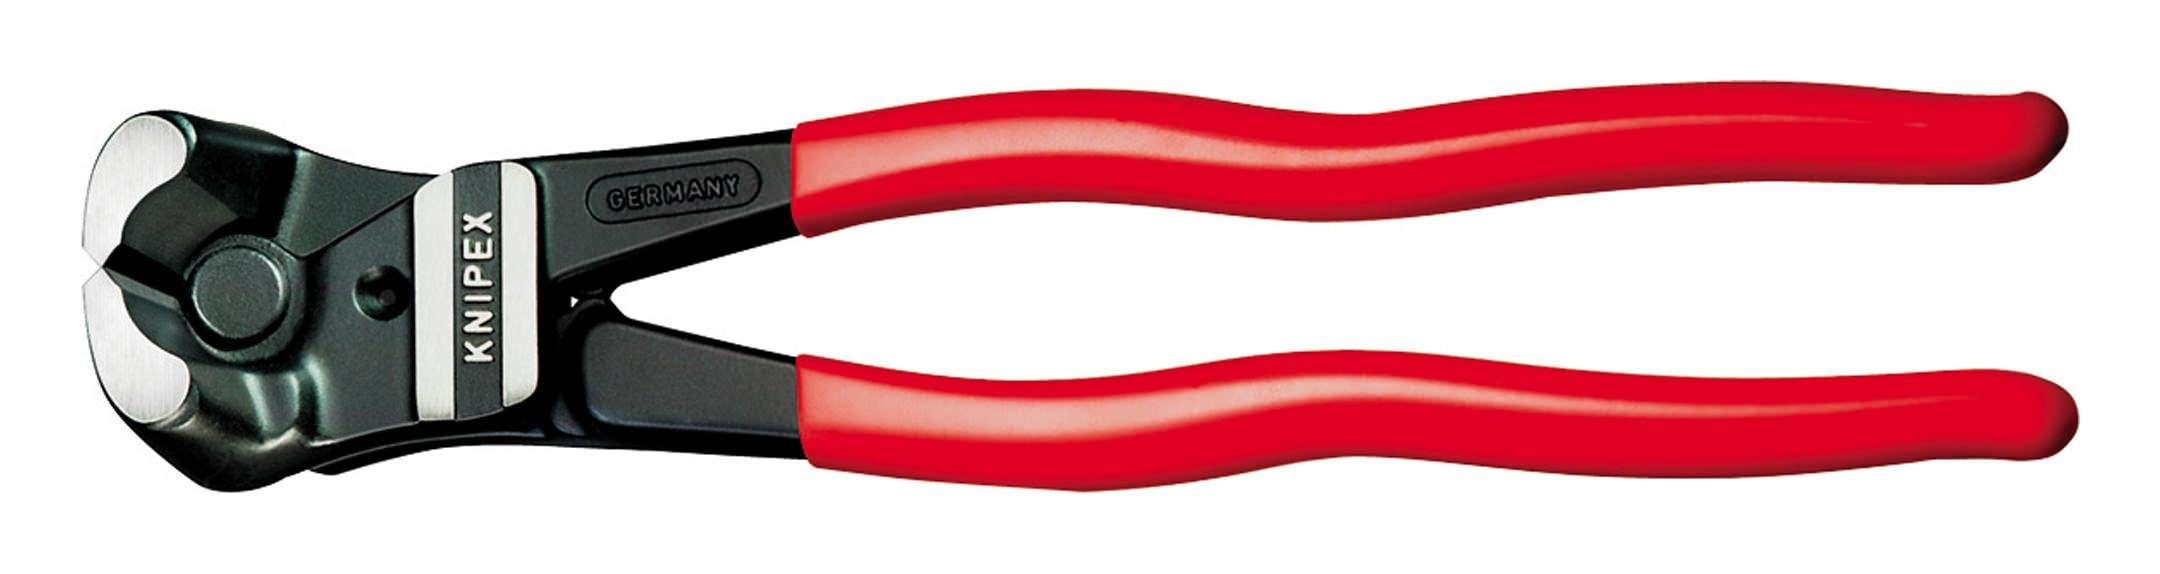 Knipex Seitenschneider, Bolzen-Vornschneider 200 mm mit Kunststoff-Griff | Zangen